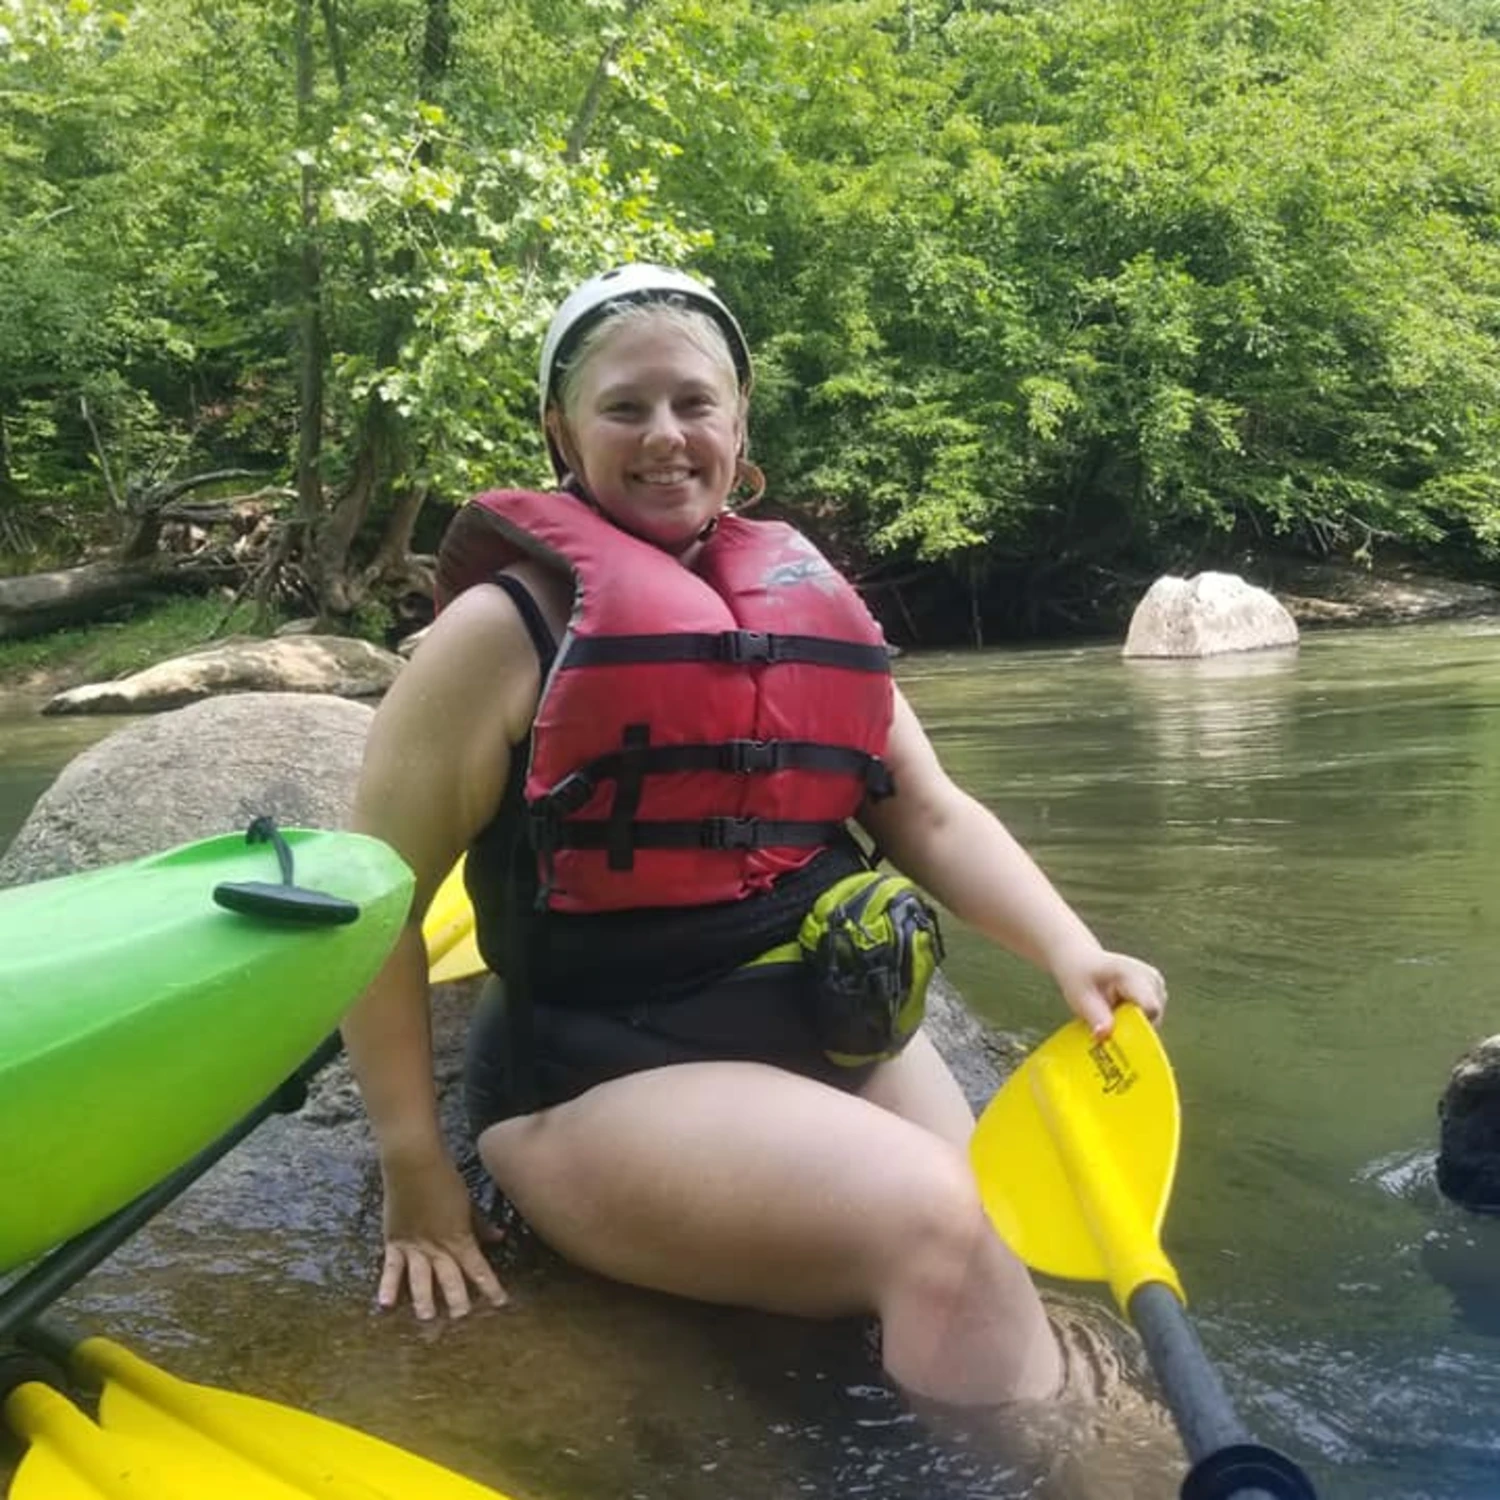 Travel advisor kayaking